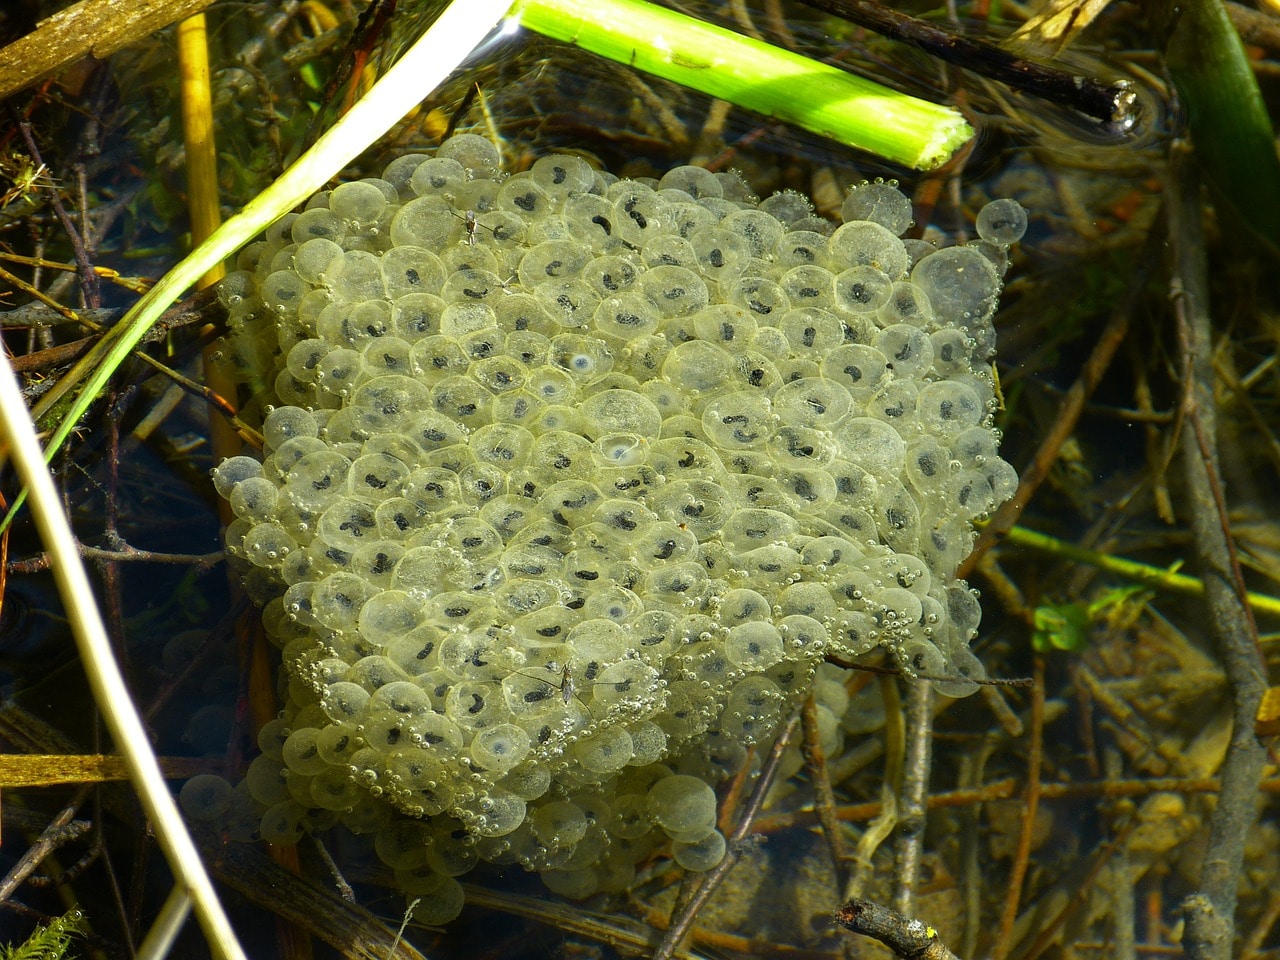 Les oeufs de la grenouille sont regroupés en bloc à la surface de l'eau